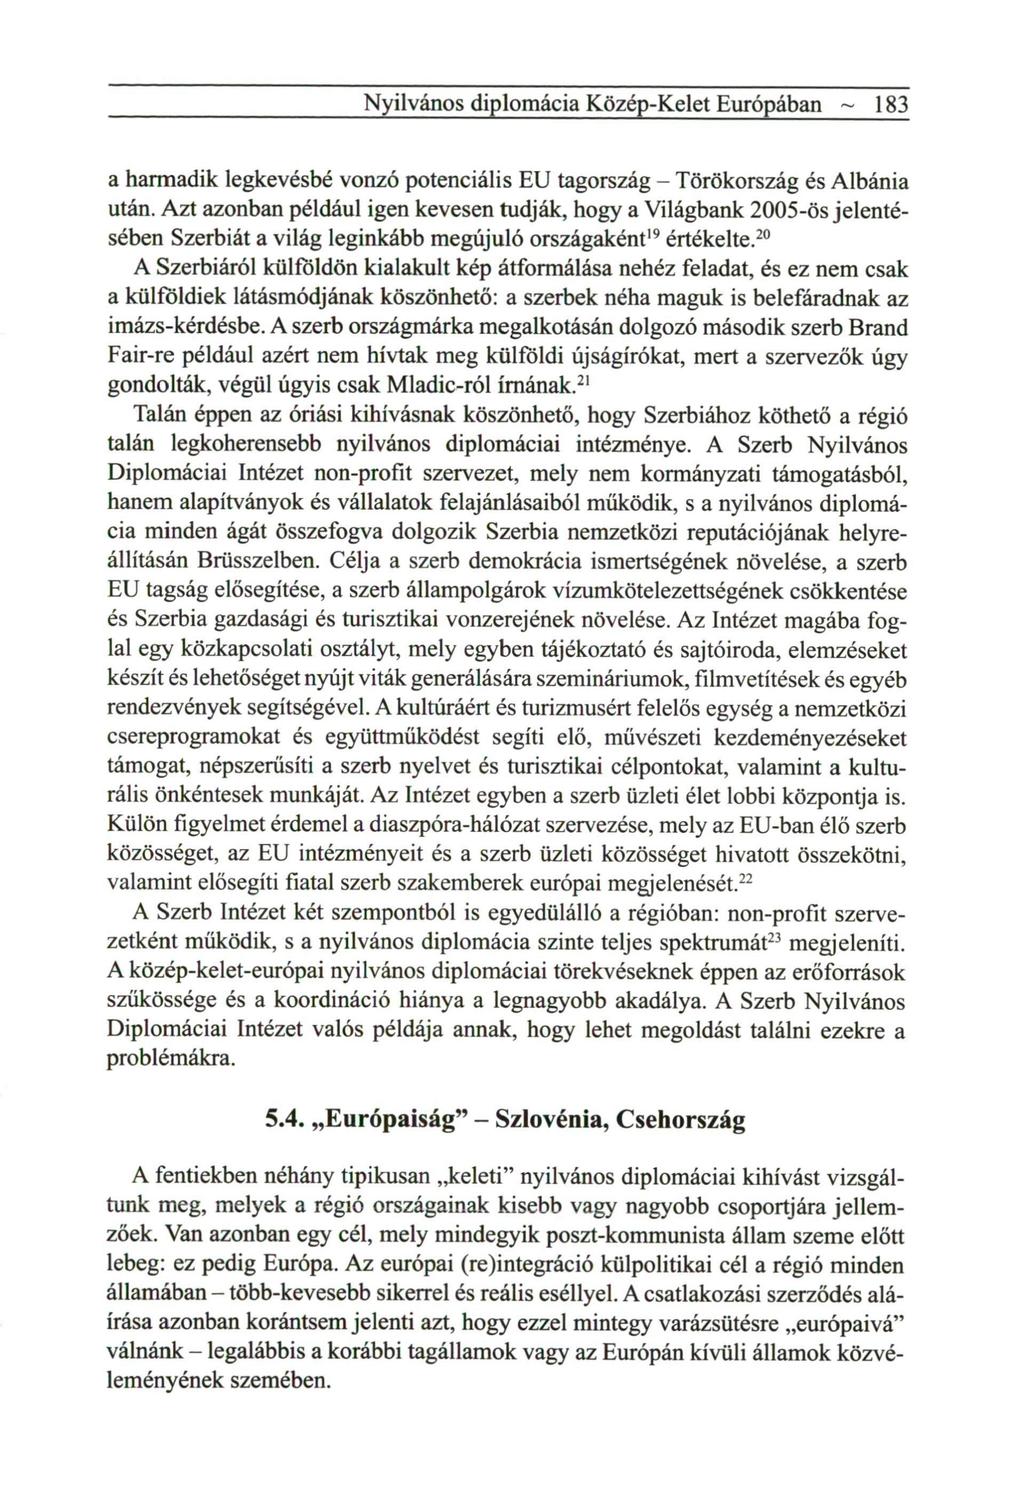 Nyilvános diplomácia Közép-Kelet Európában ~ 183 a h a r m a d i k legkevésbé vonzó potenciális E U tagország - Törökország és Albánia után.